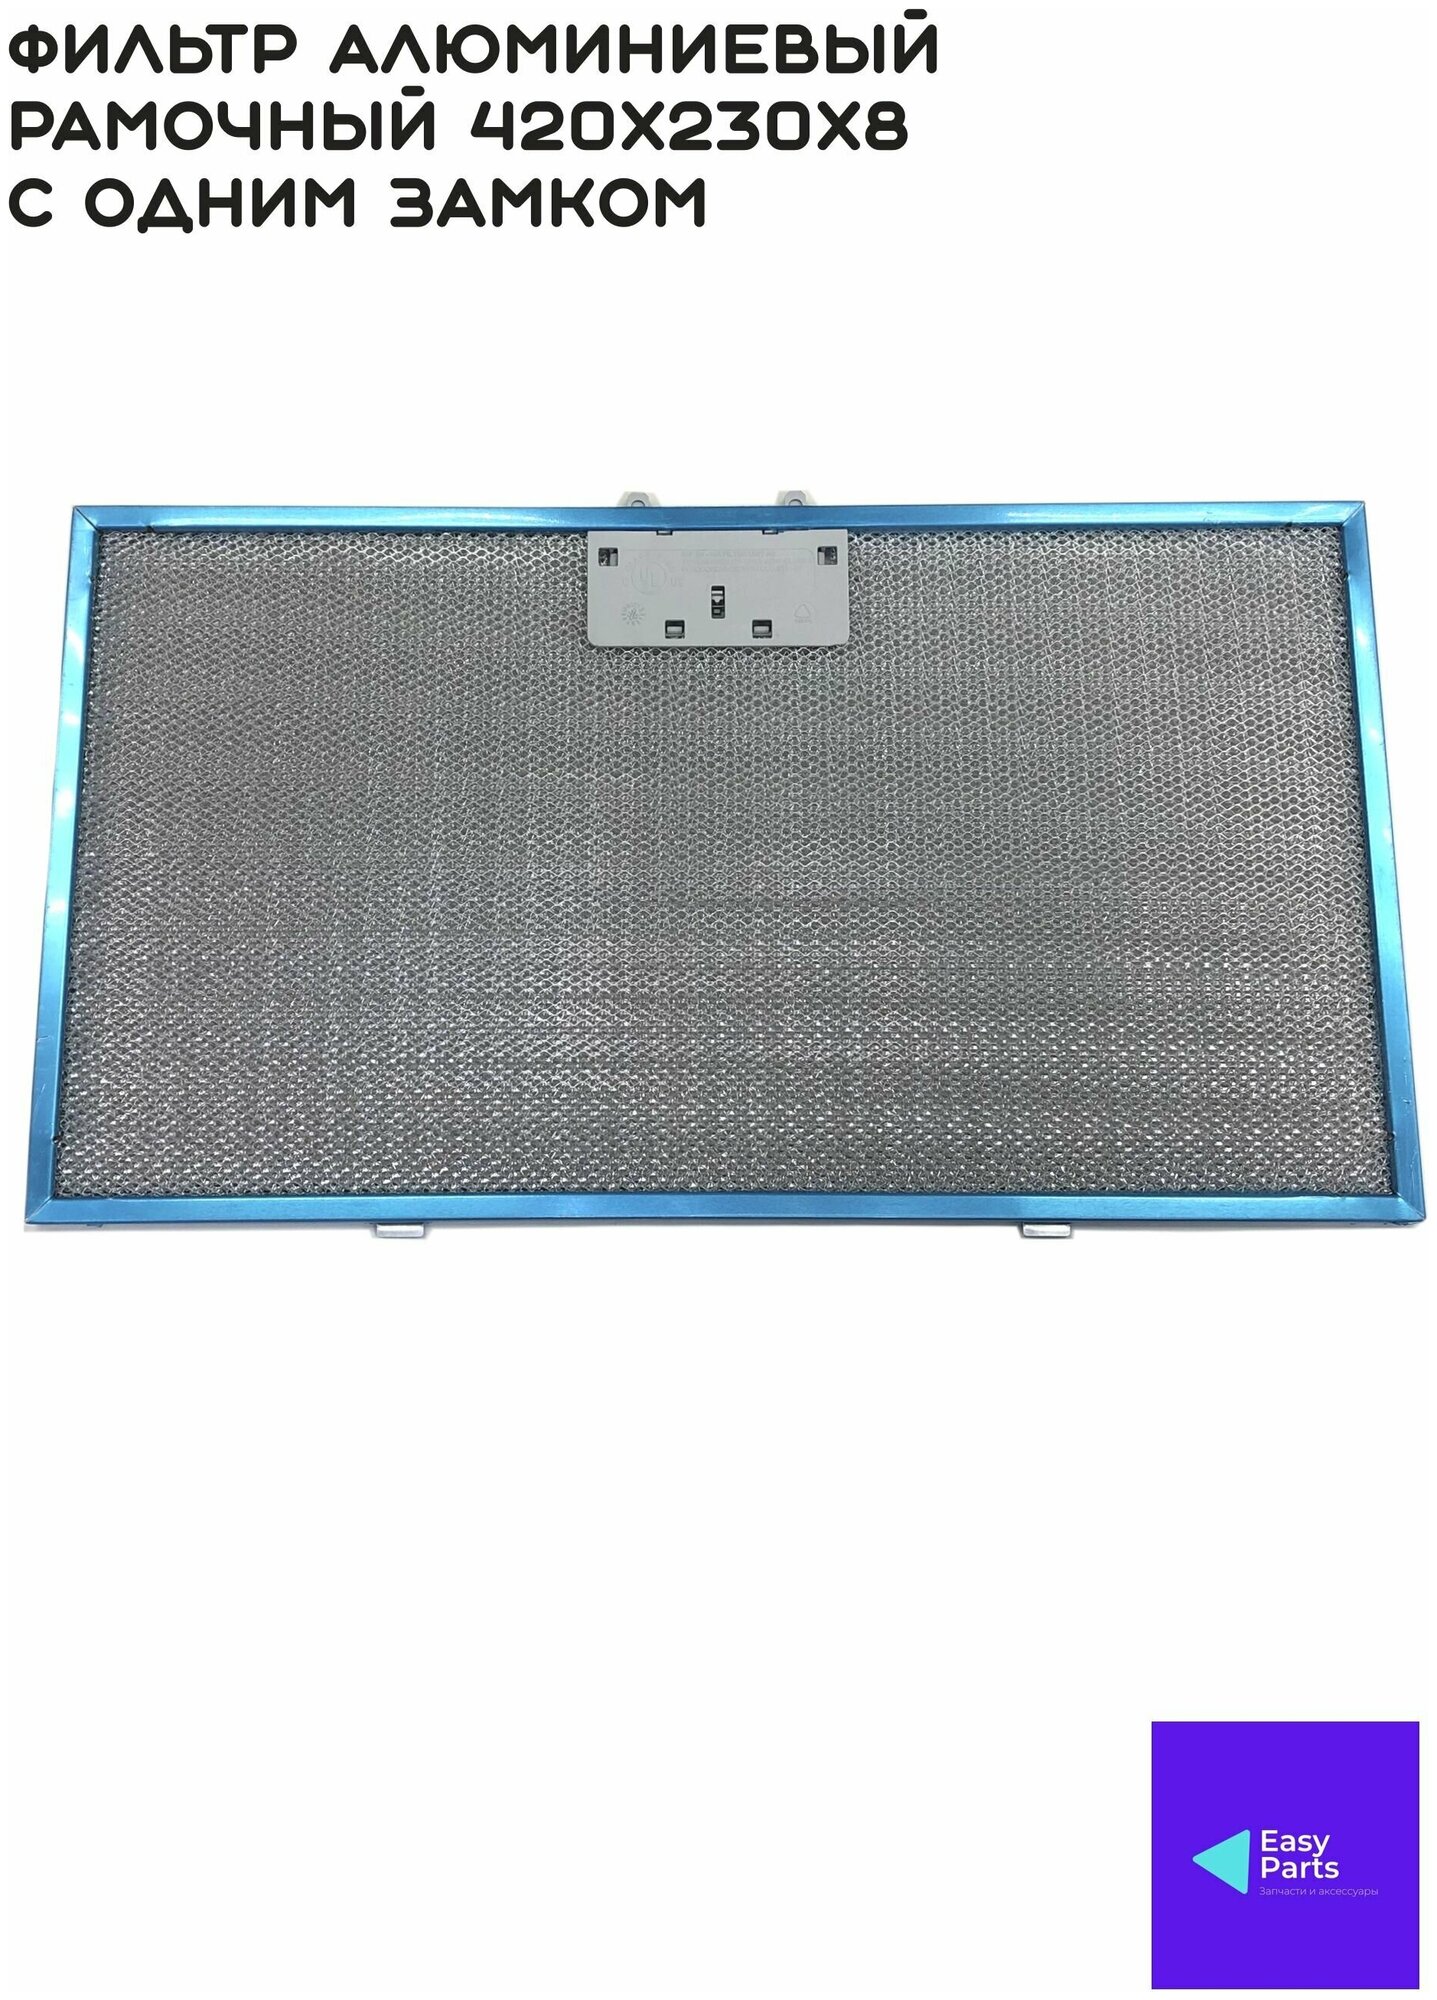 Фильтр алюминиевый рамочный для вытяжки 420х230х8 с одним замком